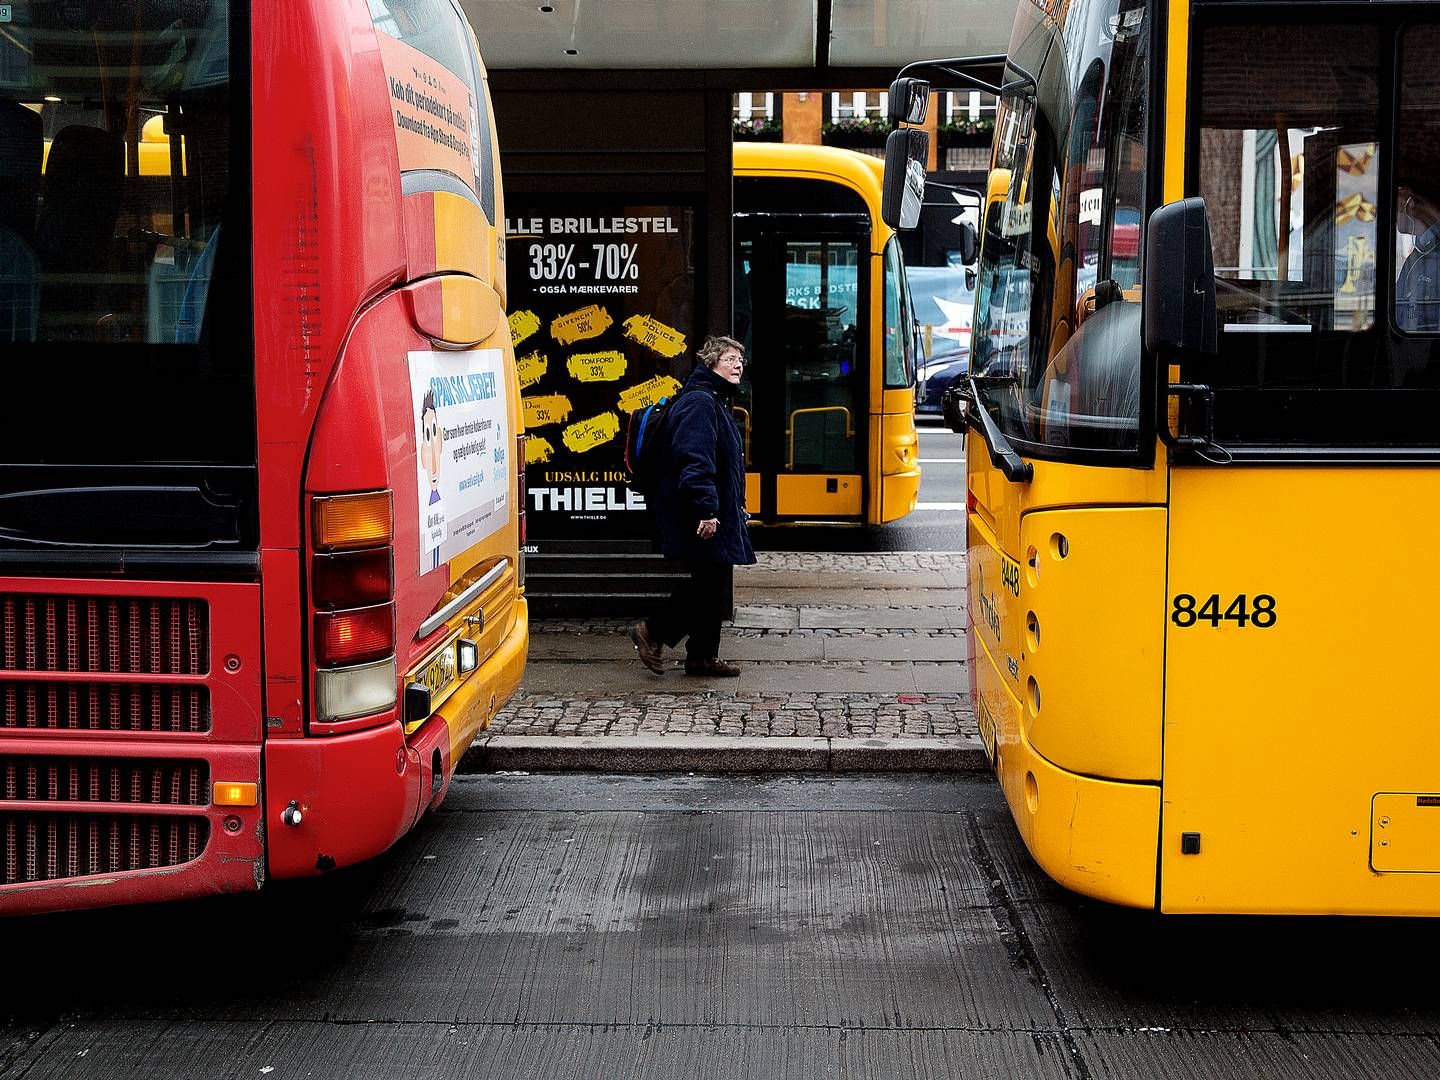 Movia er blandt de danske trafikselskaber, som Tide Bus har kontrakt med. | Foto: Thomas Borberg/Politiken/Ritzau Scanpix